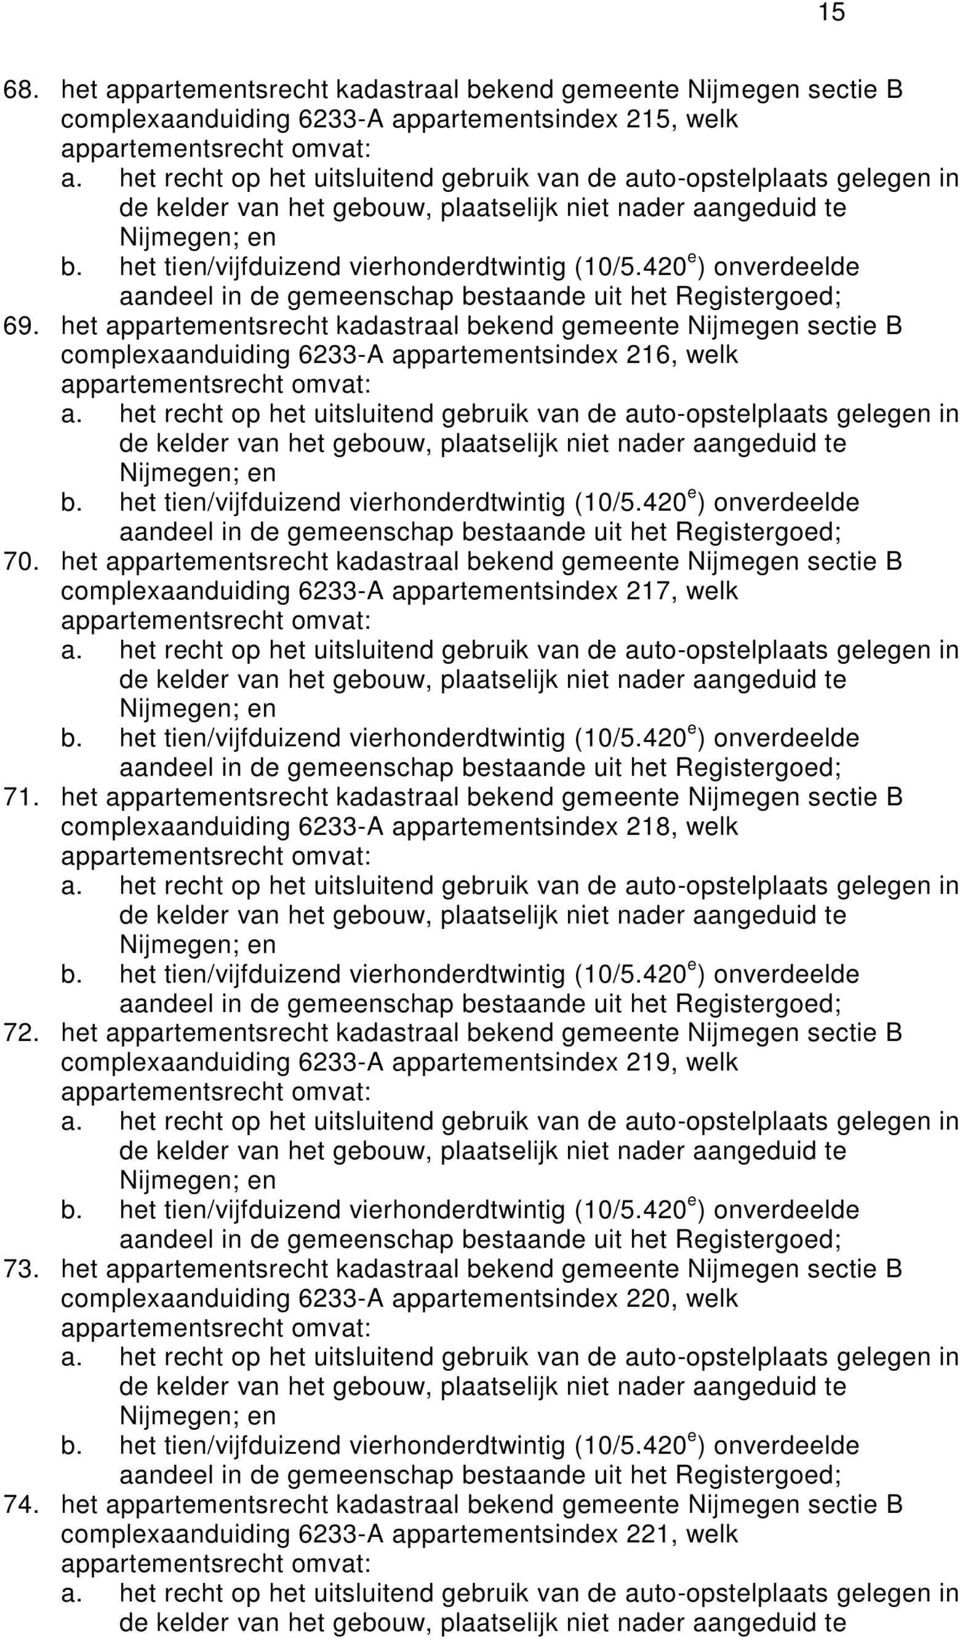 het appartemtsrecht kadastraal bekd gemete Nijmeg sectie B complexaanduiding 6233-A appartemtsindex 27, welk 7.